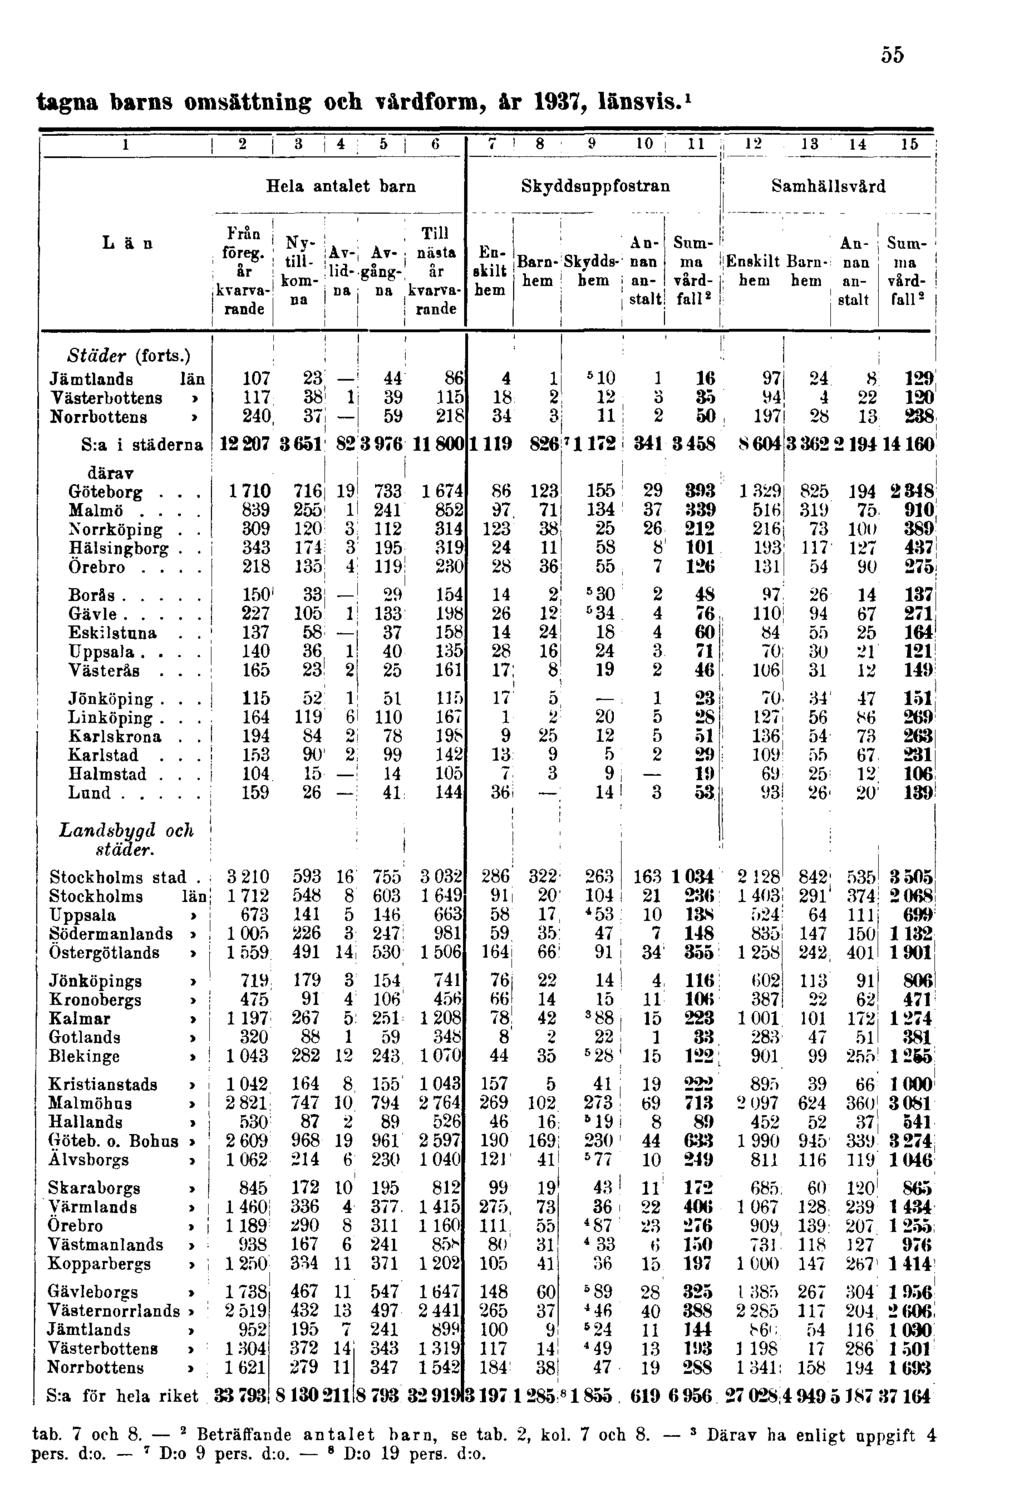 tagna barns omsättning och vårdform, år 1937, länsvis. 1 55 tab. 7 och 8.